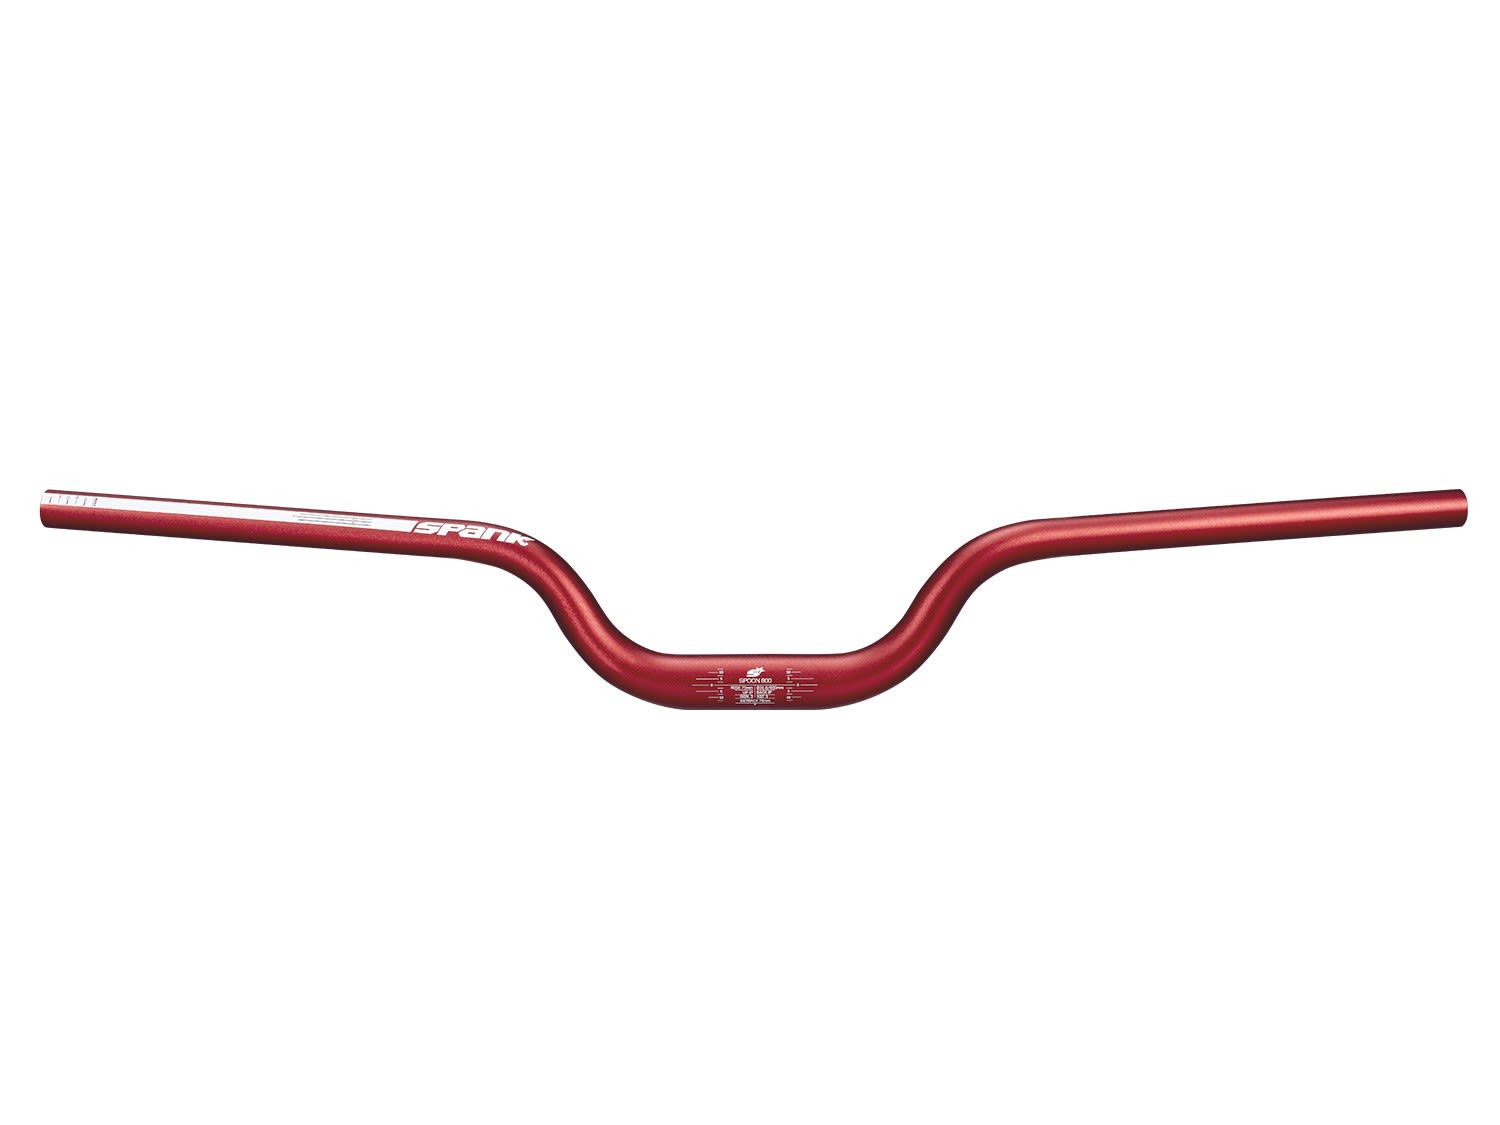 Spank Spoon 800 Fahrradlenker Rot, Zubehör, Reparatur & Wartung, Größe 20 mm - Farbe Red SP-BAR-0068